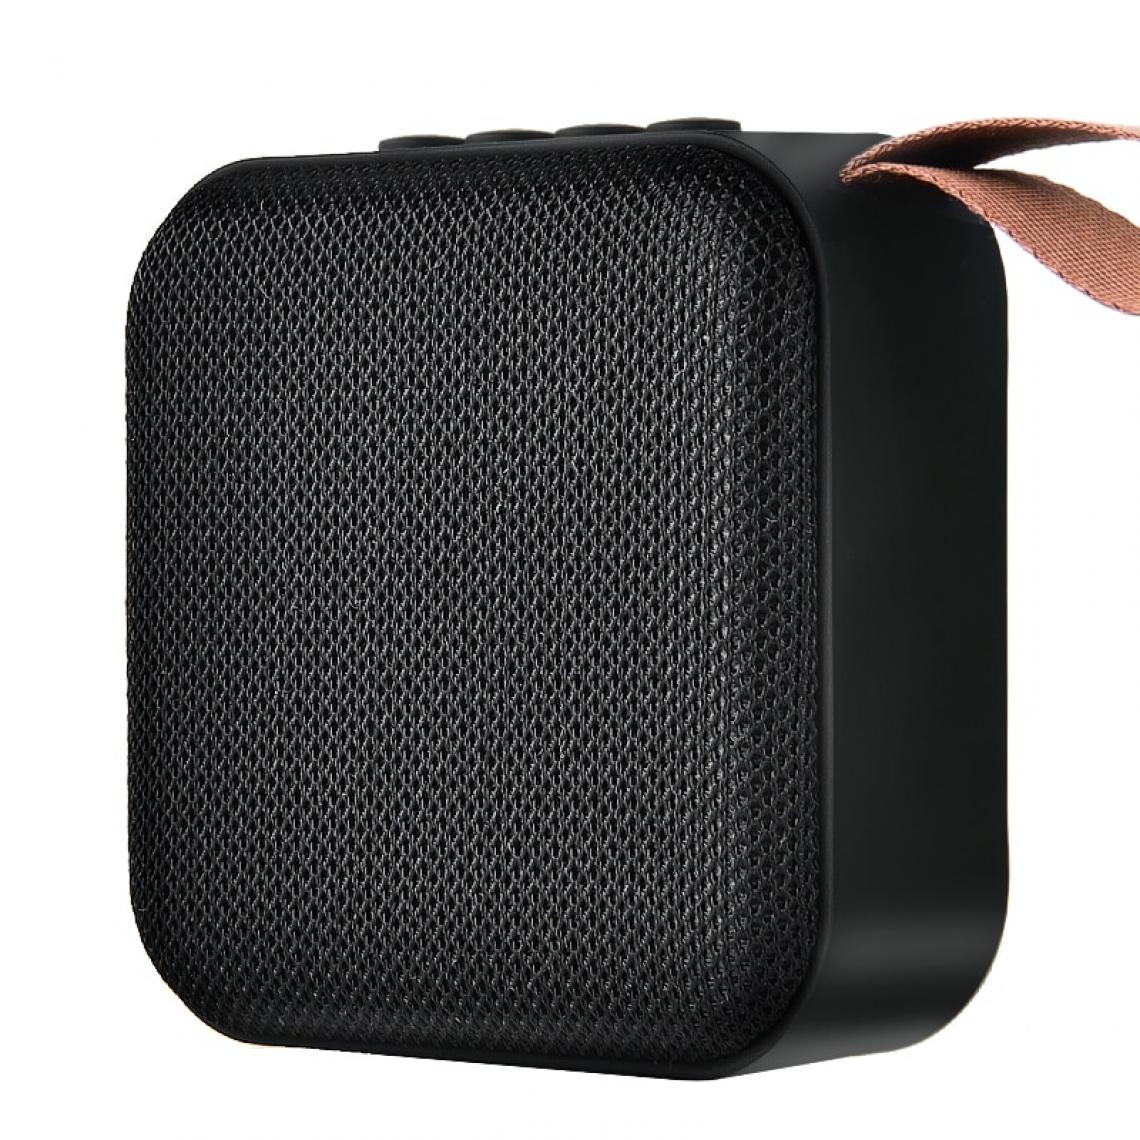 Universal - Mini haut-parleur Bluetooth sans fil Haut-parleur portable stéréo Subwoofer Bluetooth 5.0 avec haut-parleurs extérieurs SD FM | Haut-parleurs portables (noir) - Hauts-parleurs